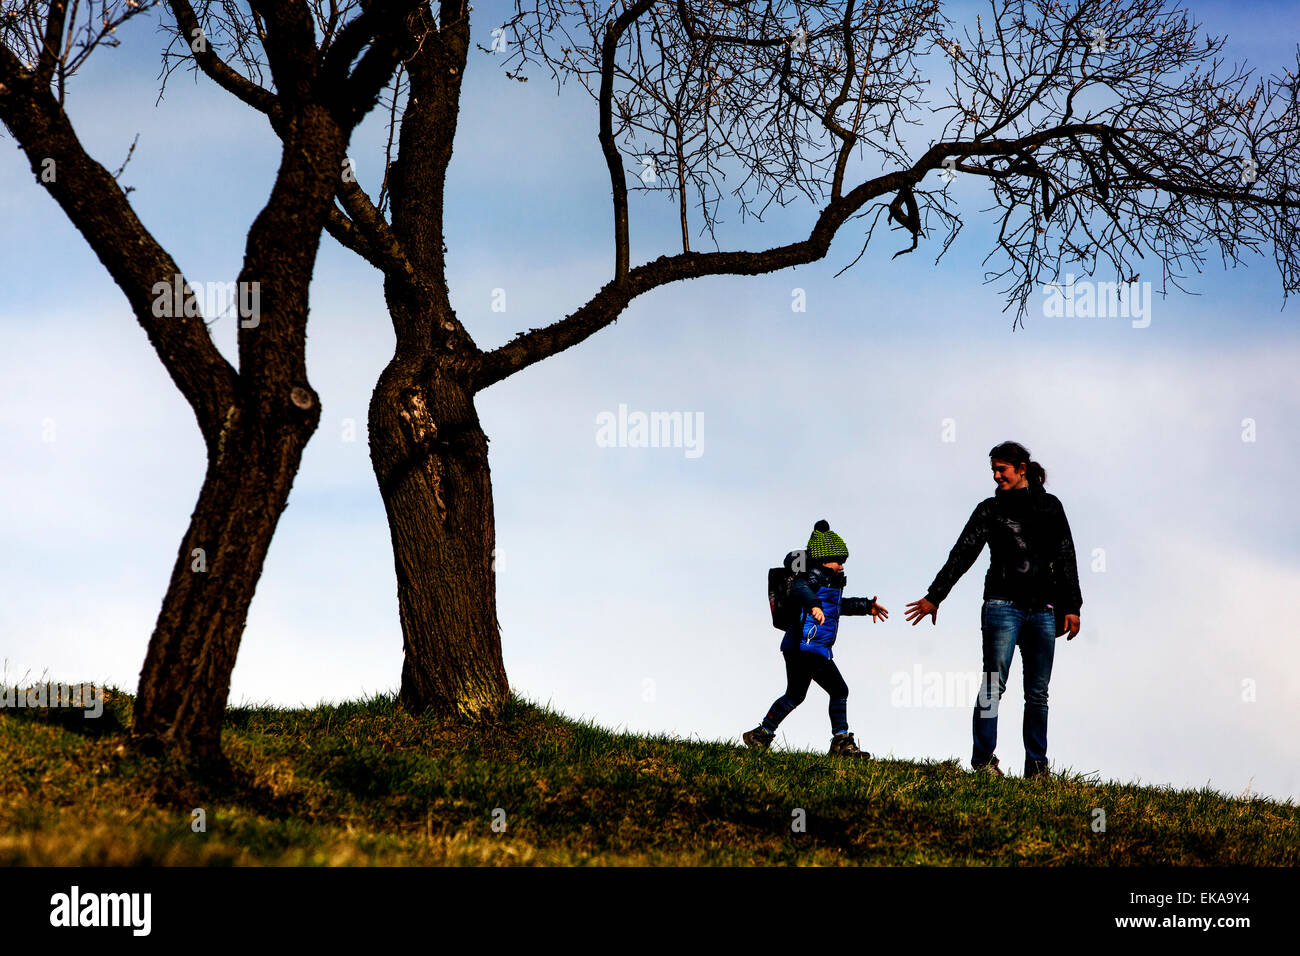 Sagome di persone nella primavera orchard alberi senza foglie Foto Stock